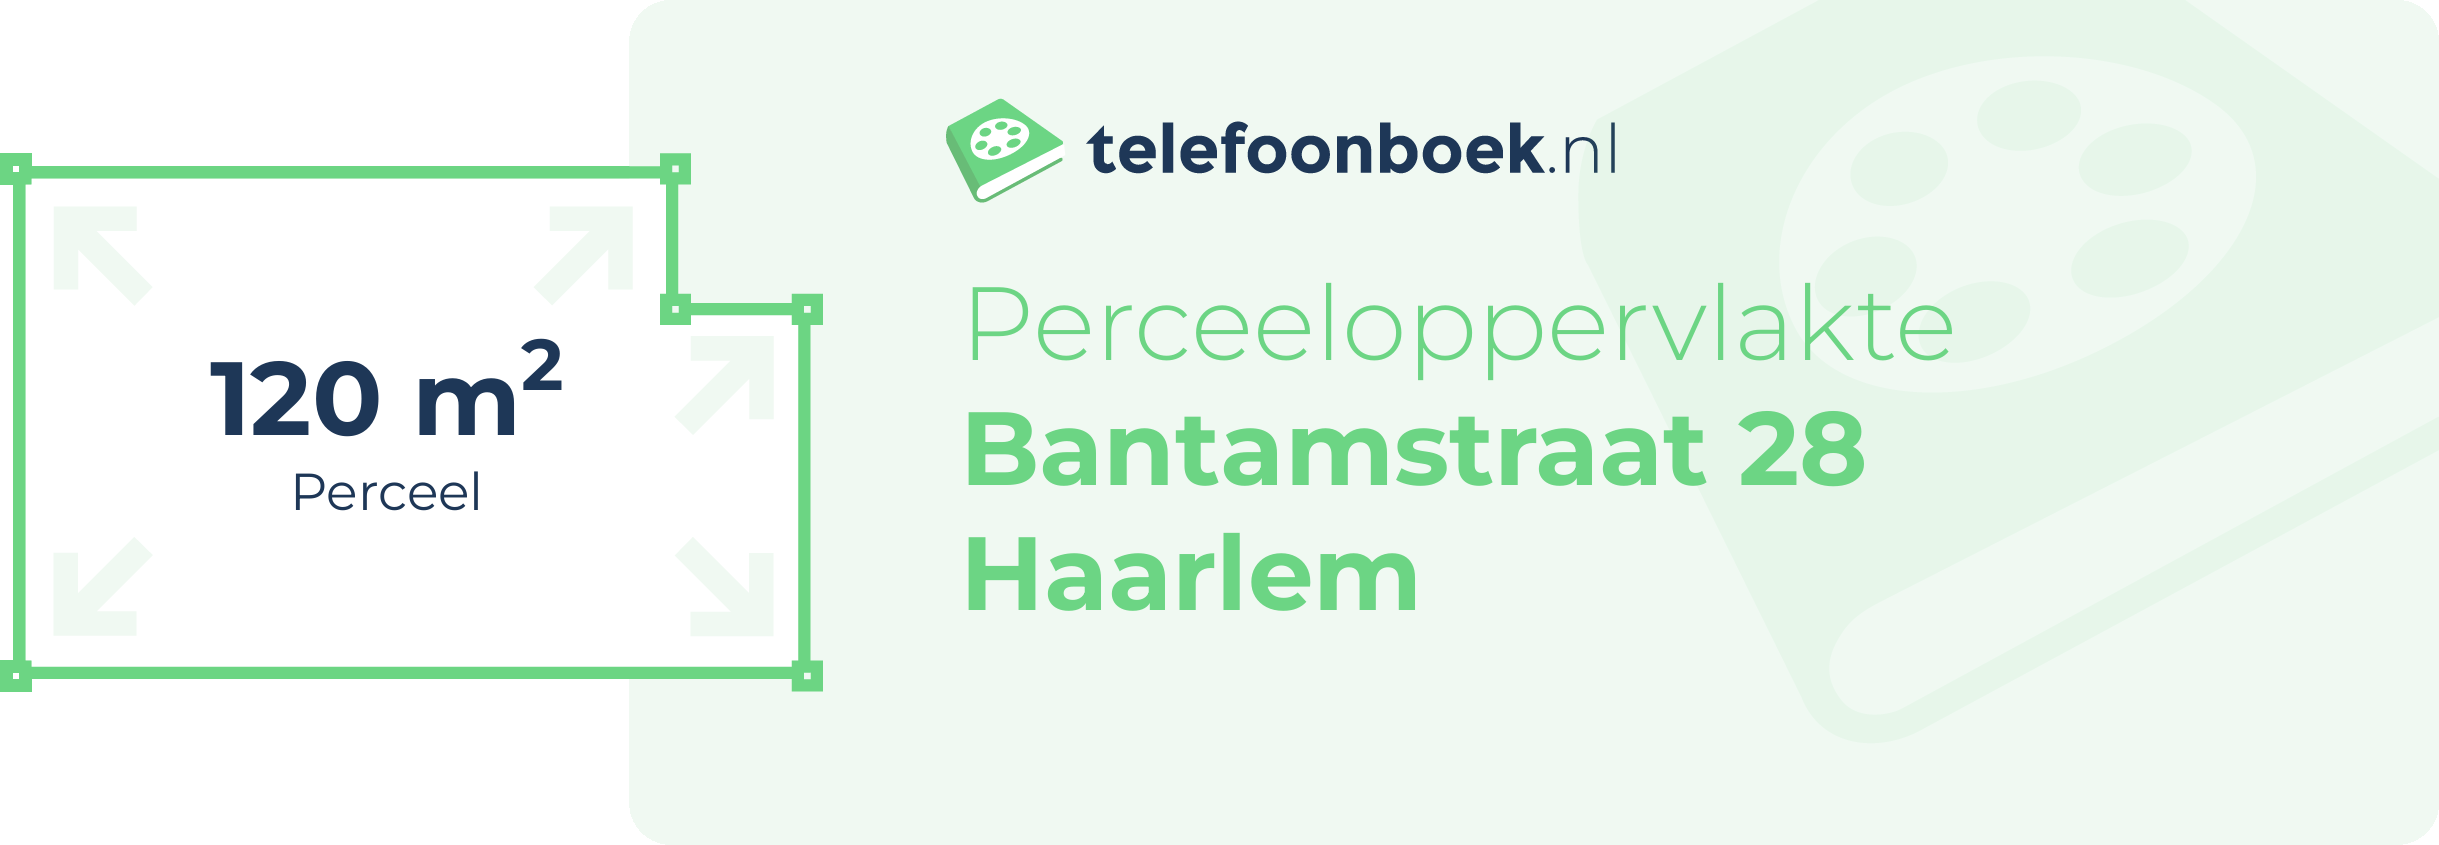 Perceeloppervlakte Bantamstraat 28 Haarlem